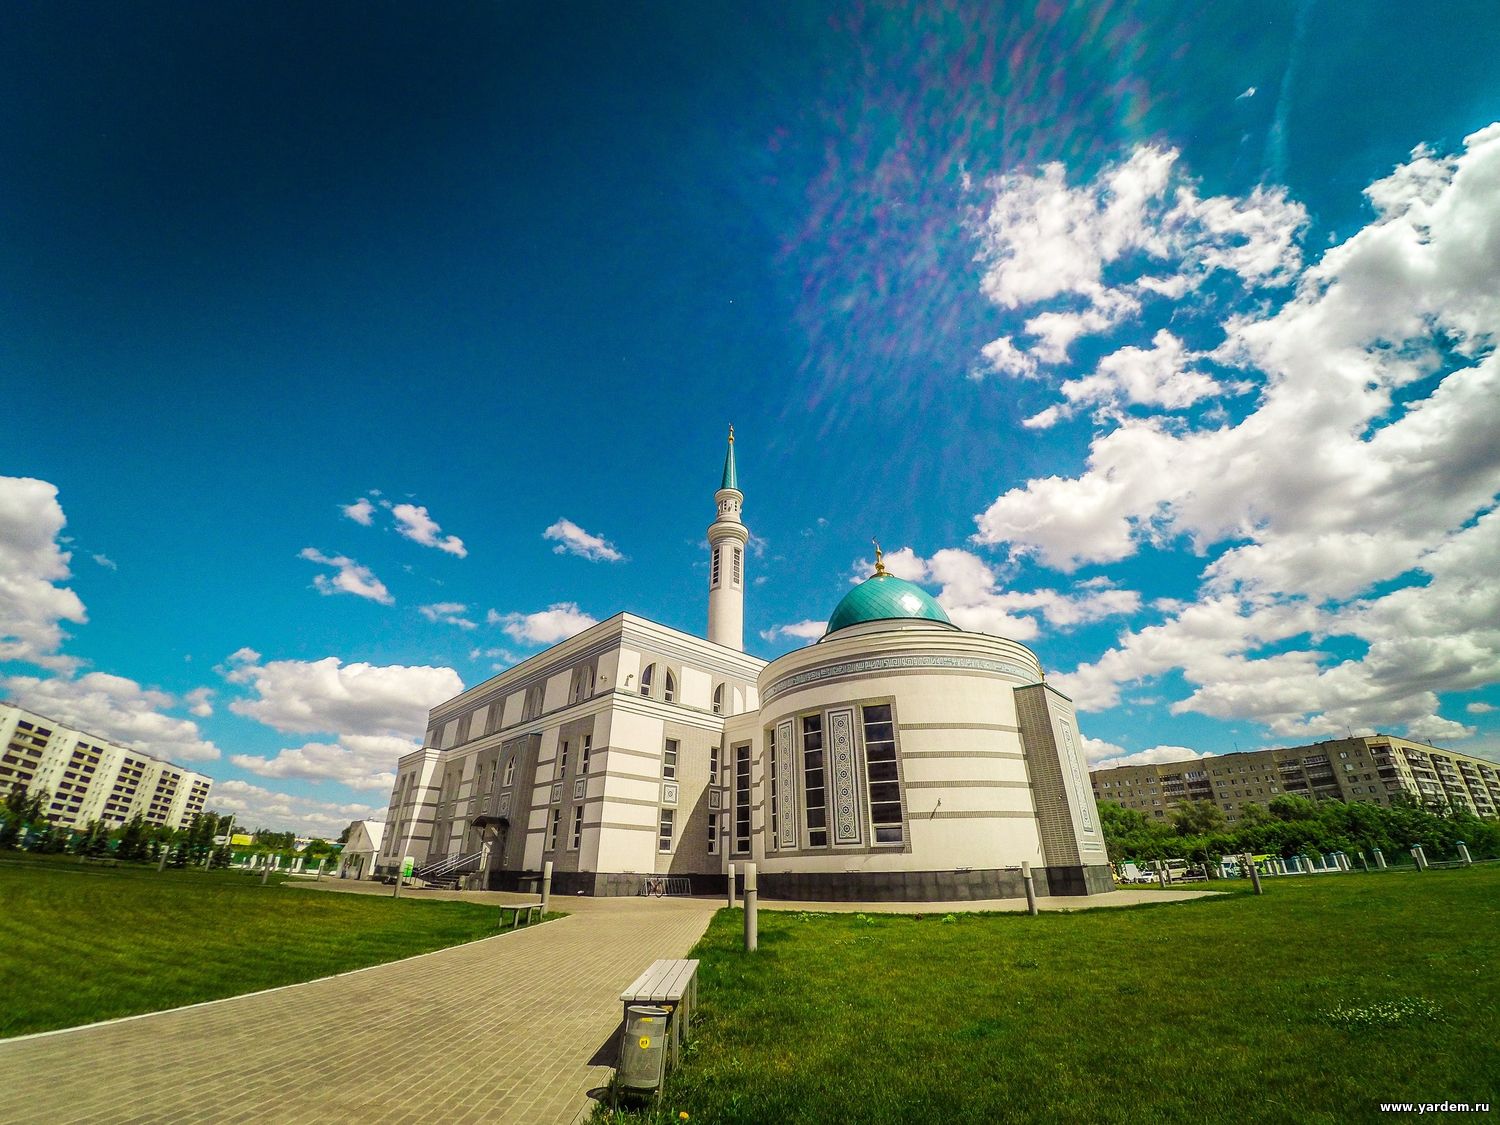 Мечеть «Ярдэм» стала победителем голосования. Общие новости